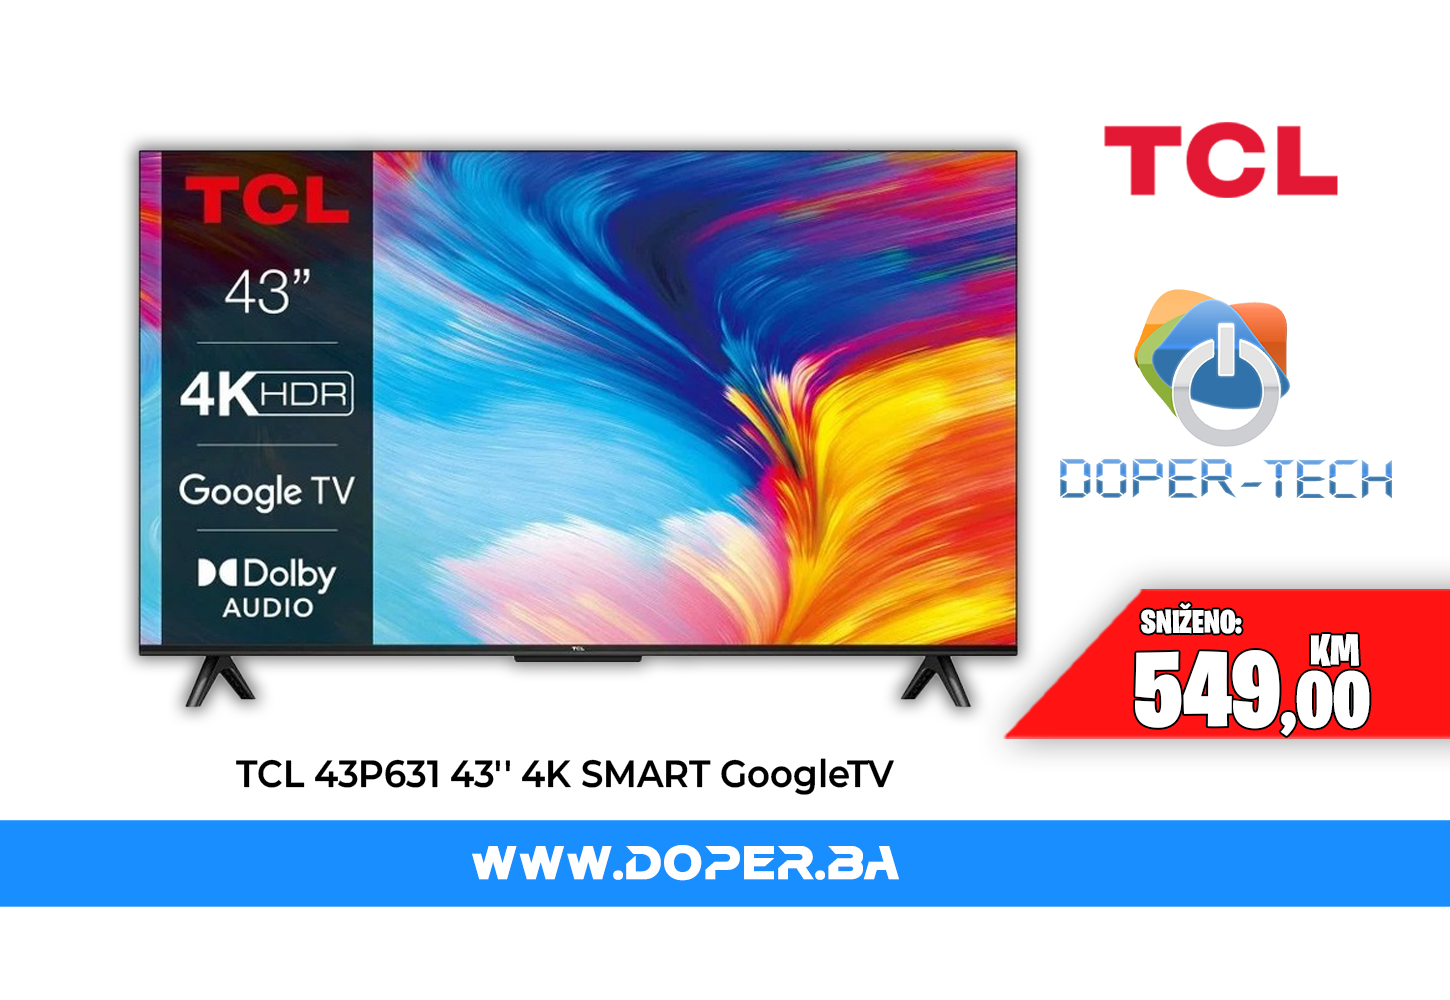 TCL 43P631 43 LED UltraHD 4K Google TV